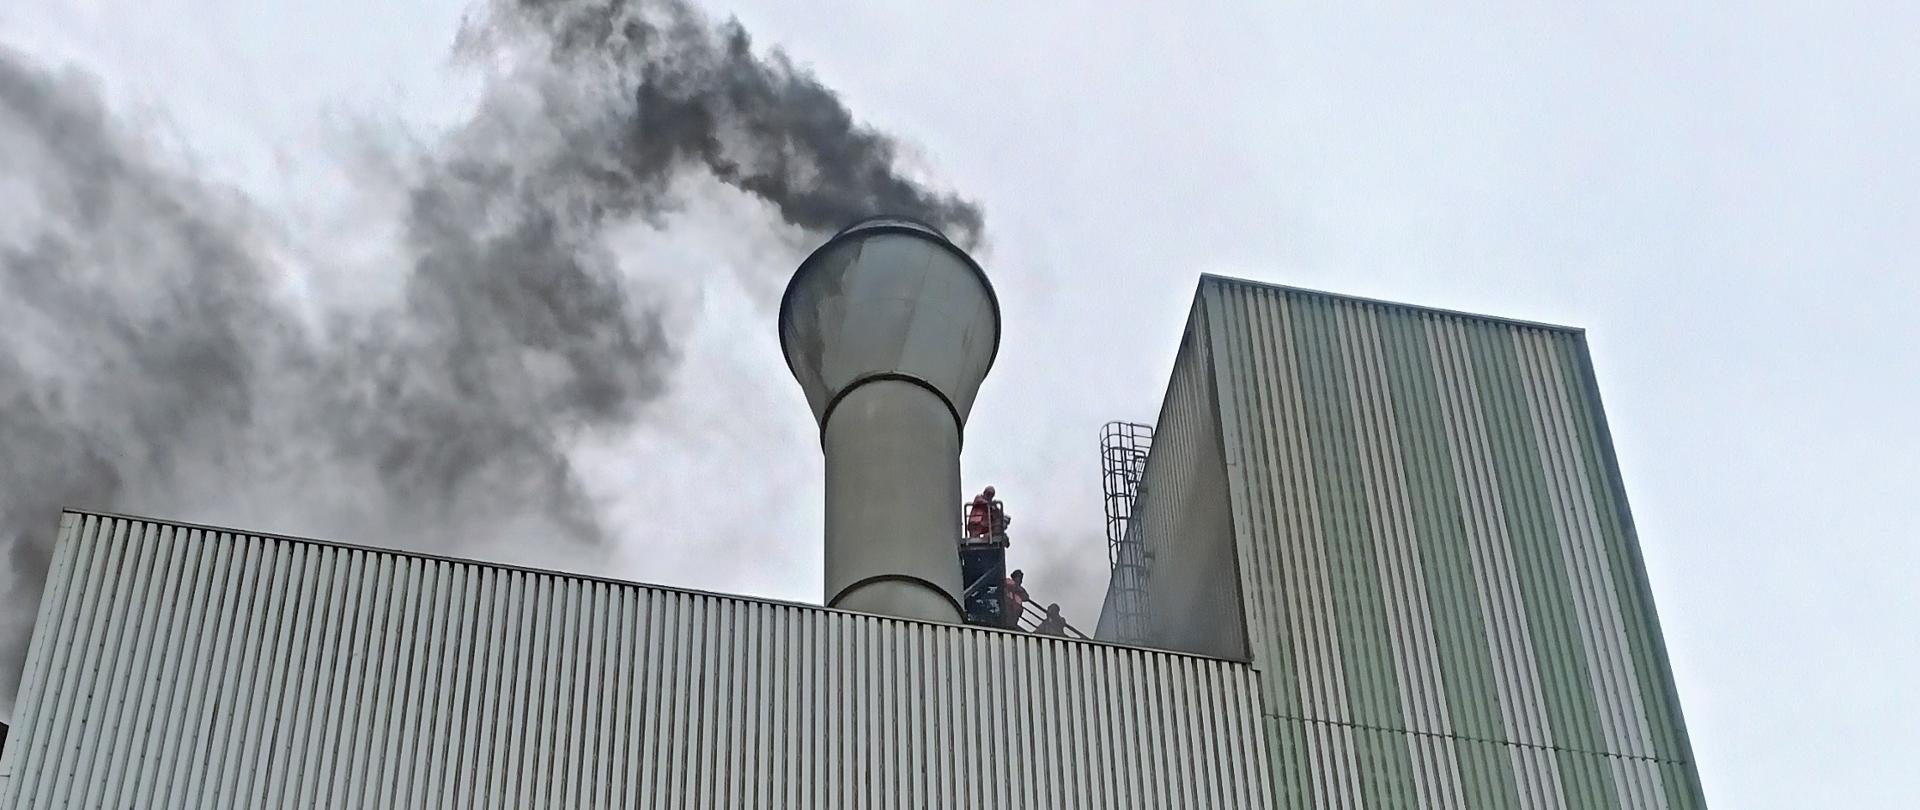 Na zdjęciu widać wysoki budynek przemysłowy koloru szarego o elewacji z blachy trapezowej. Z nad dachem widać unoszący się dym. Na pomoście przy kominie stoją odcięci przez pożar pracownicy. 